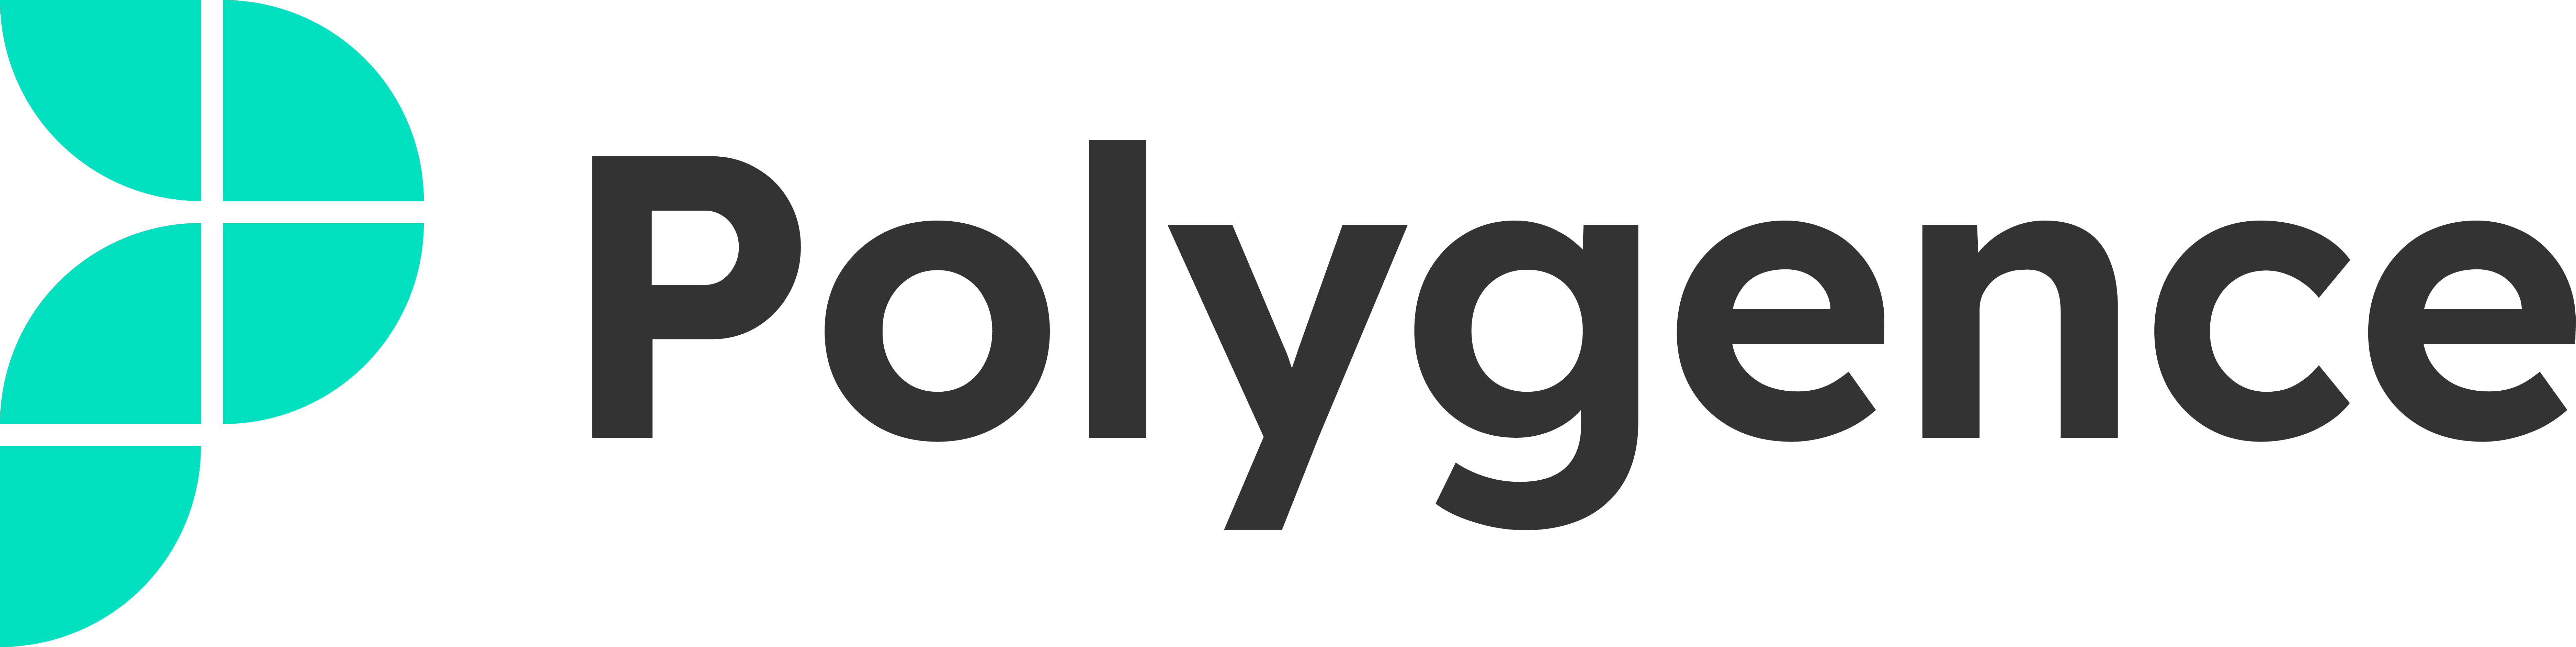 Polygence